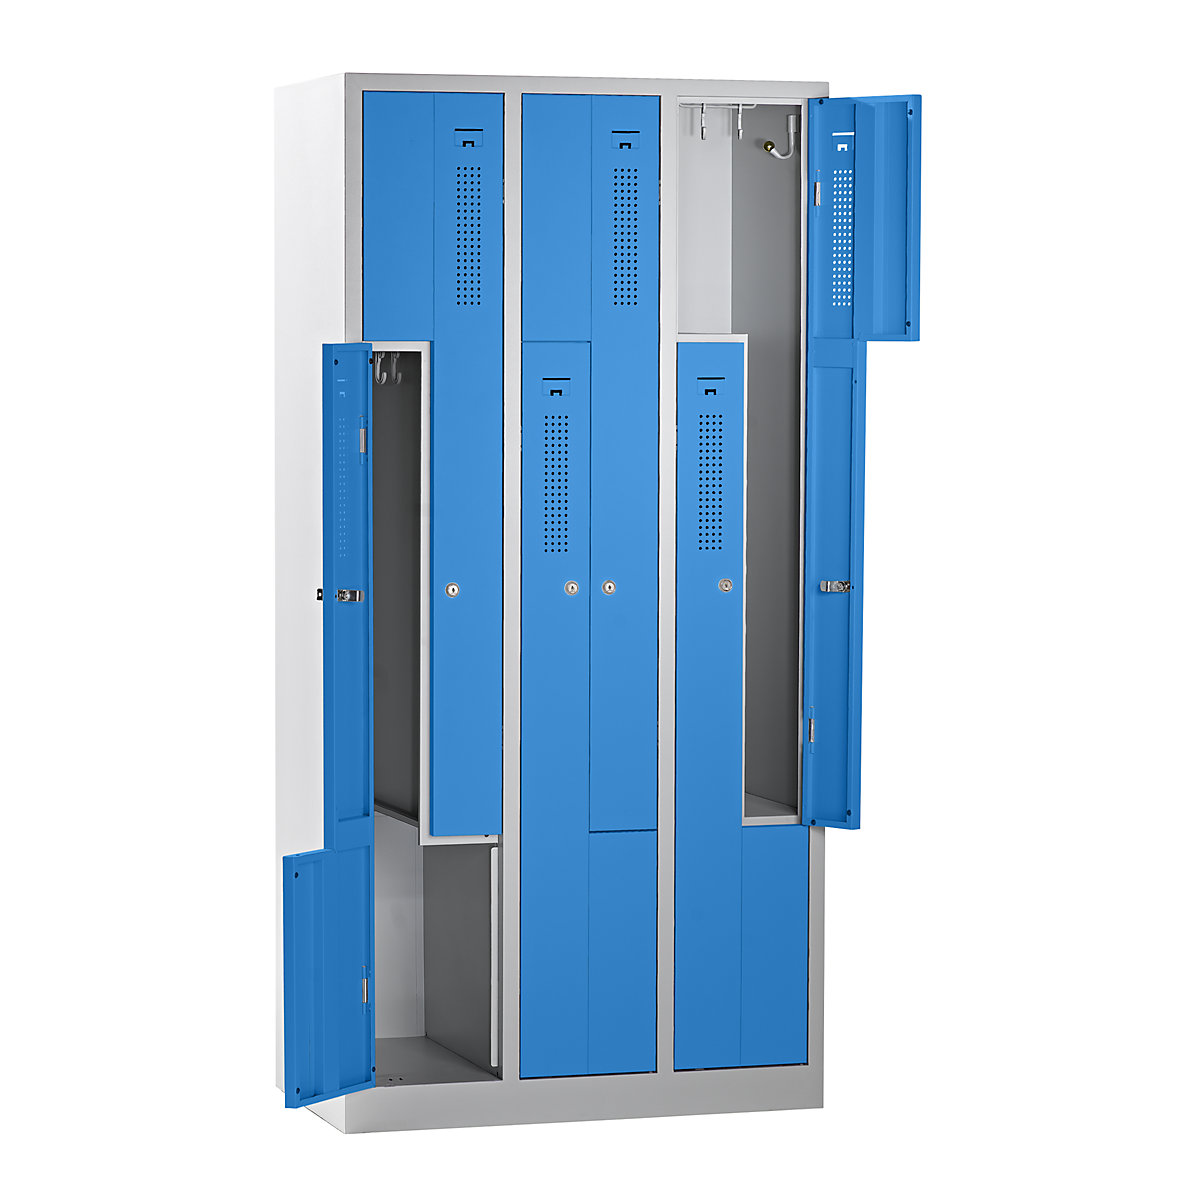 EUROKRAFTbasic – Z-öltözőszekrény, szélesség 870 mm, 3 rekesz, 6 ajtó, ajtó színe világoskék, váz színe világosszürke